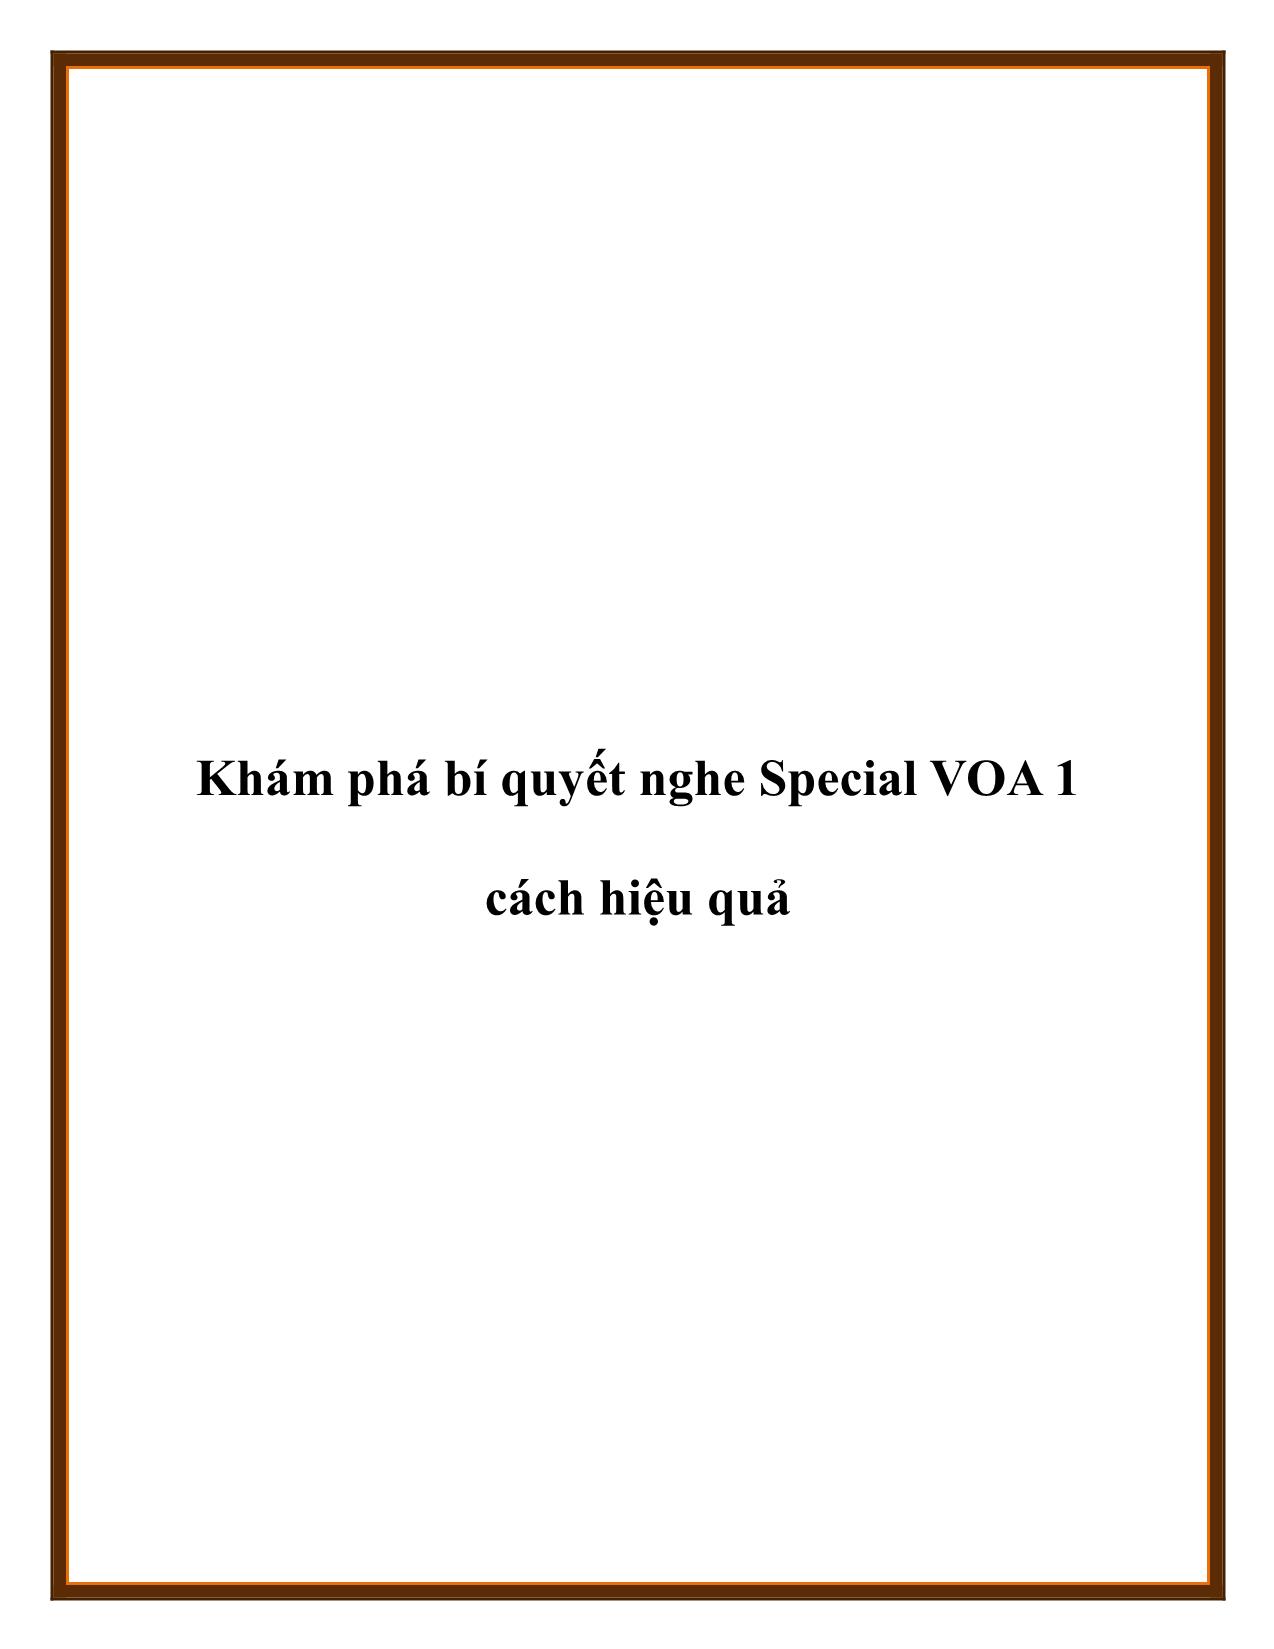 Khám phá bí quyết nghe Special VOA 1 cách hiệu quả trang 1